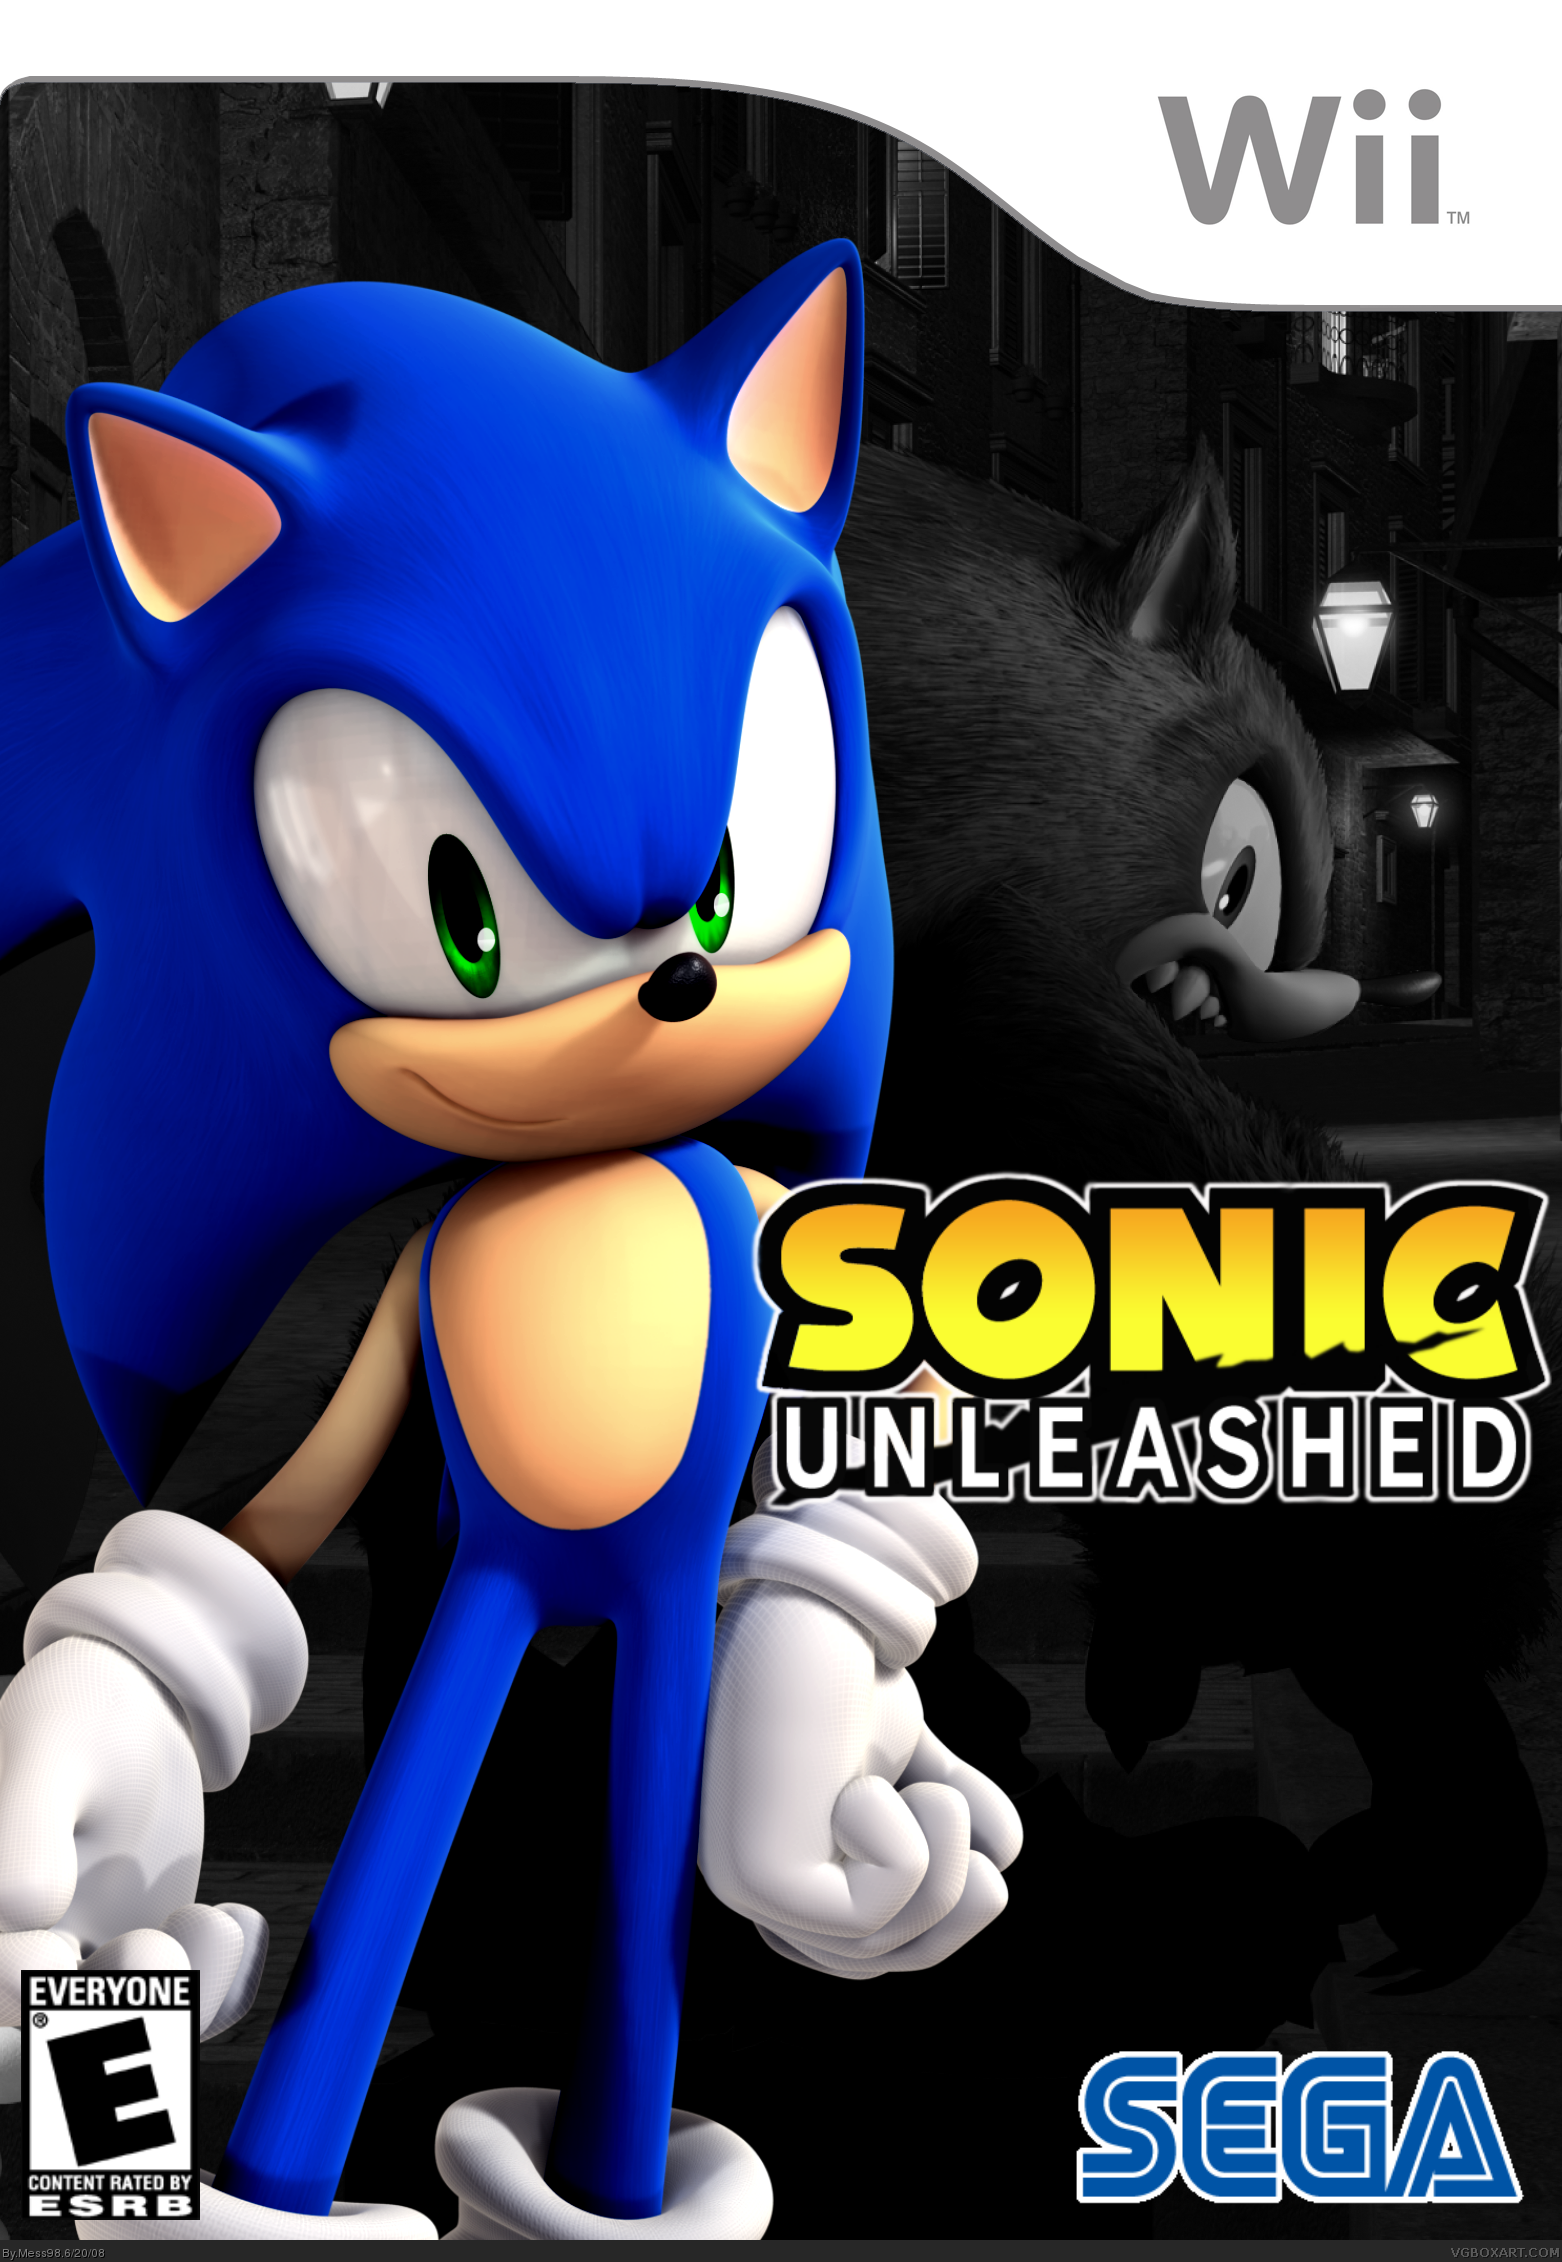 Мобиус анлишед. Соник Анлишд. Sonic unleashed обложка. Соник Анлишед на Xbox 360. Sonic unleashed ps2.